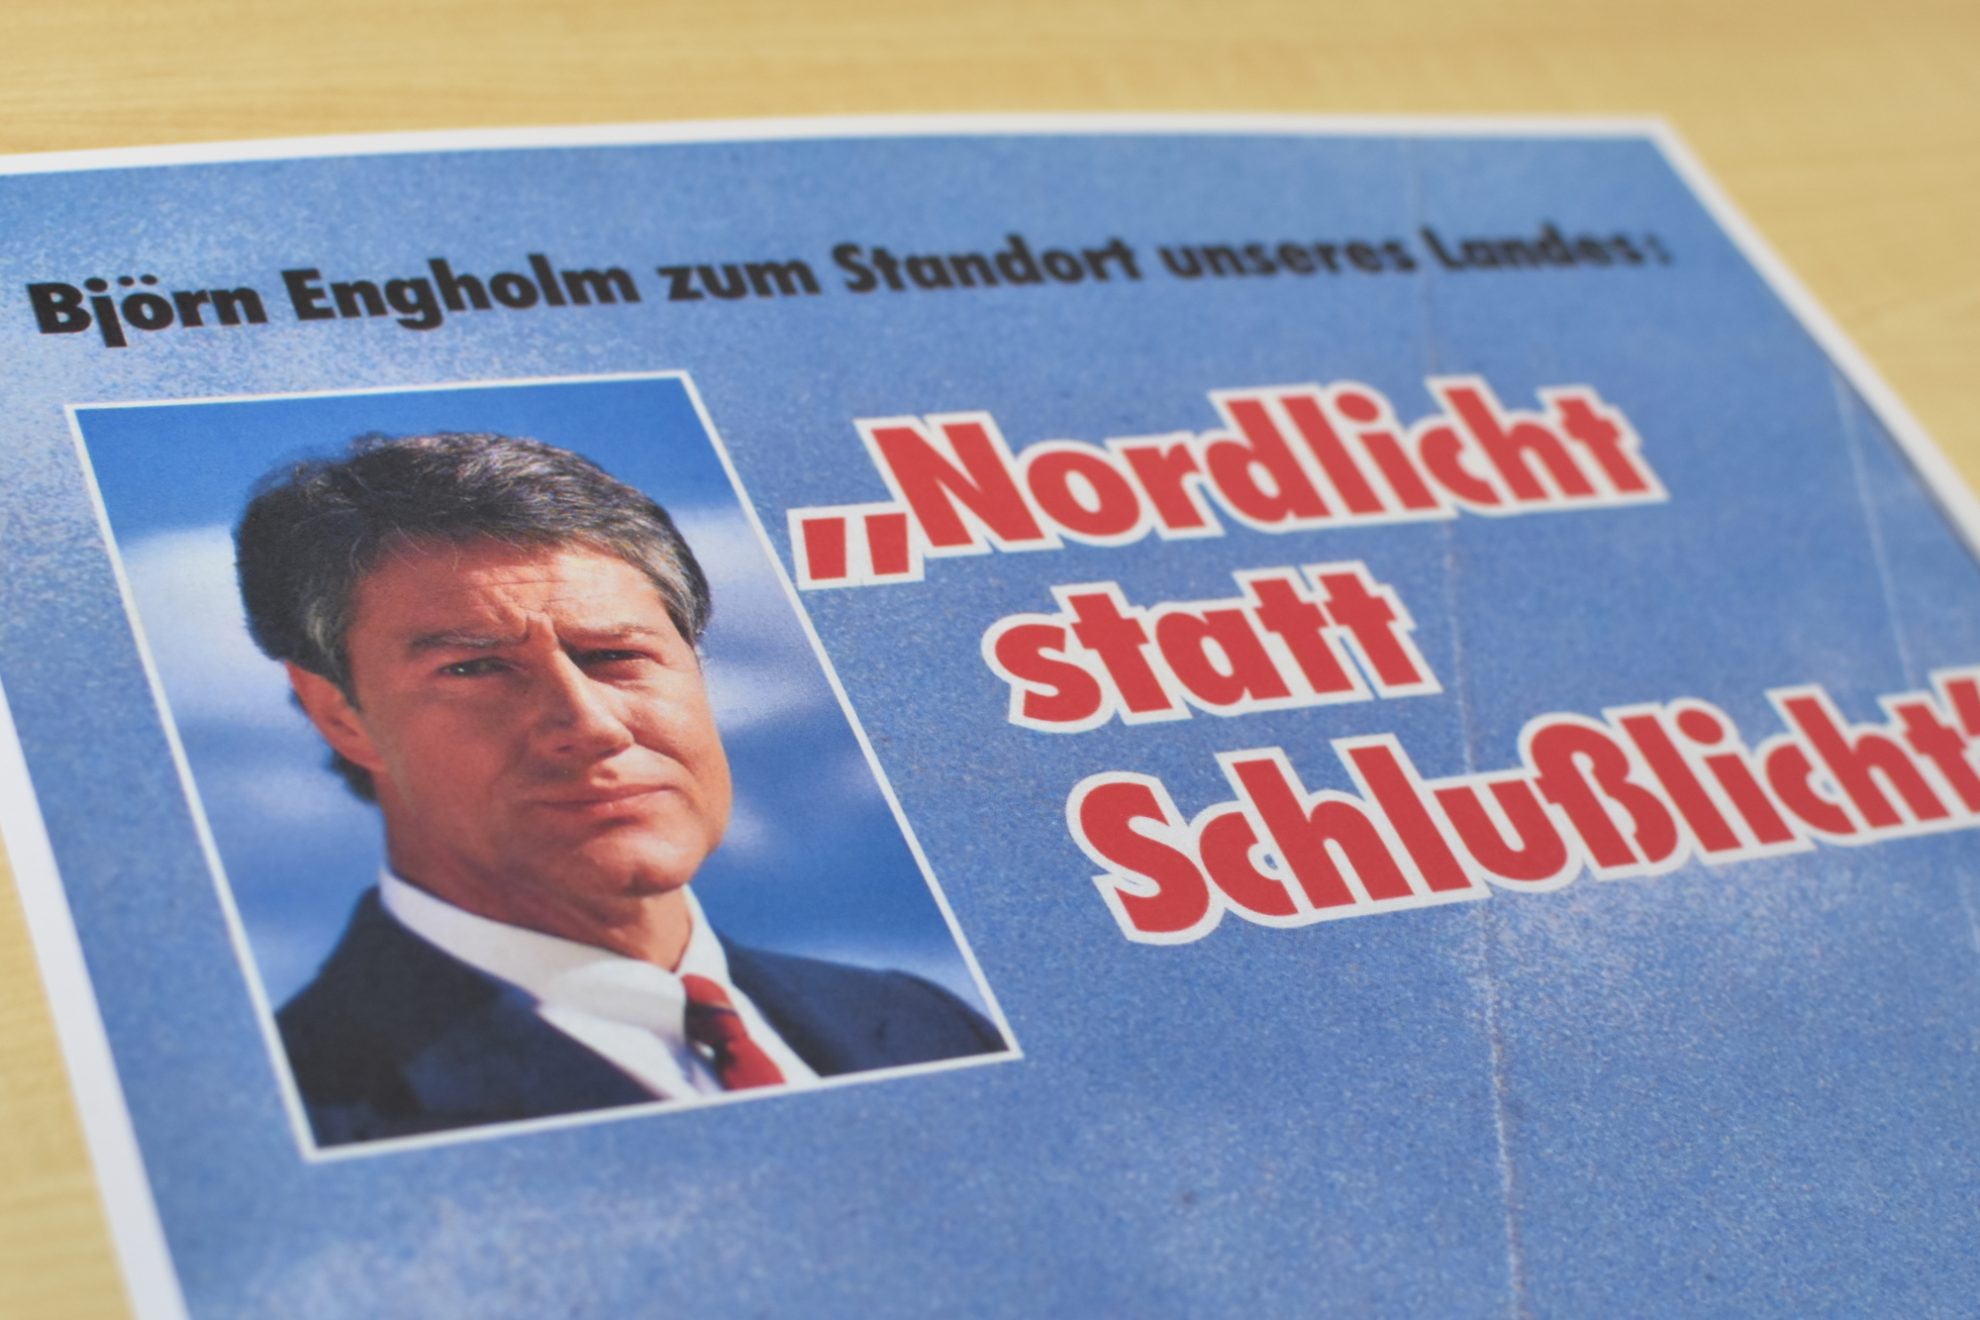 Plakat mit Björn Engholm: "Nordlicht statt Schlußlicht"